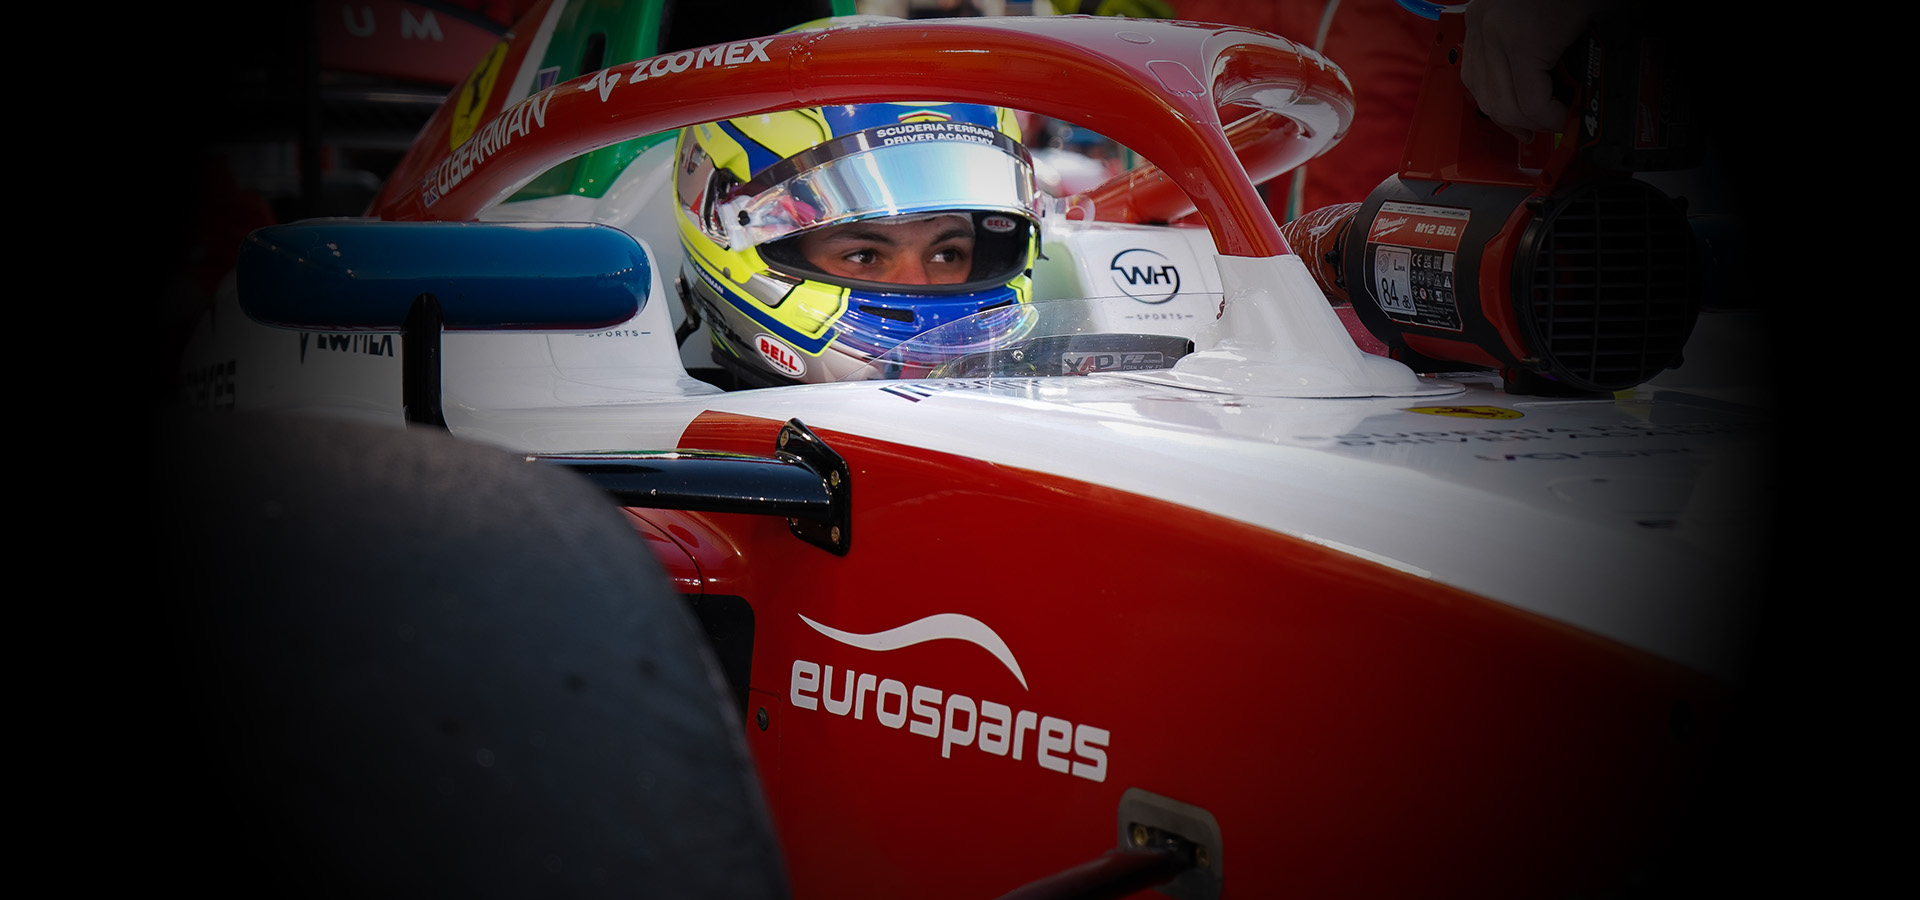 Oliver Bearman assis dans sa voiture de course de Formule 2 qui porte le logo Eurospares sur le côté. 